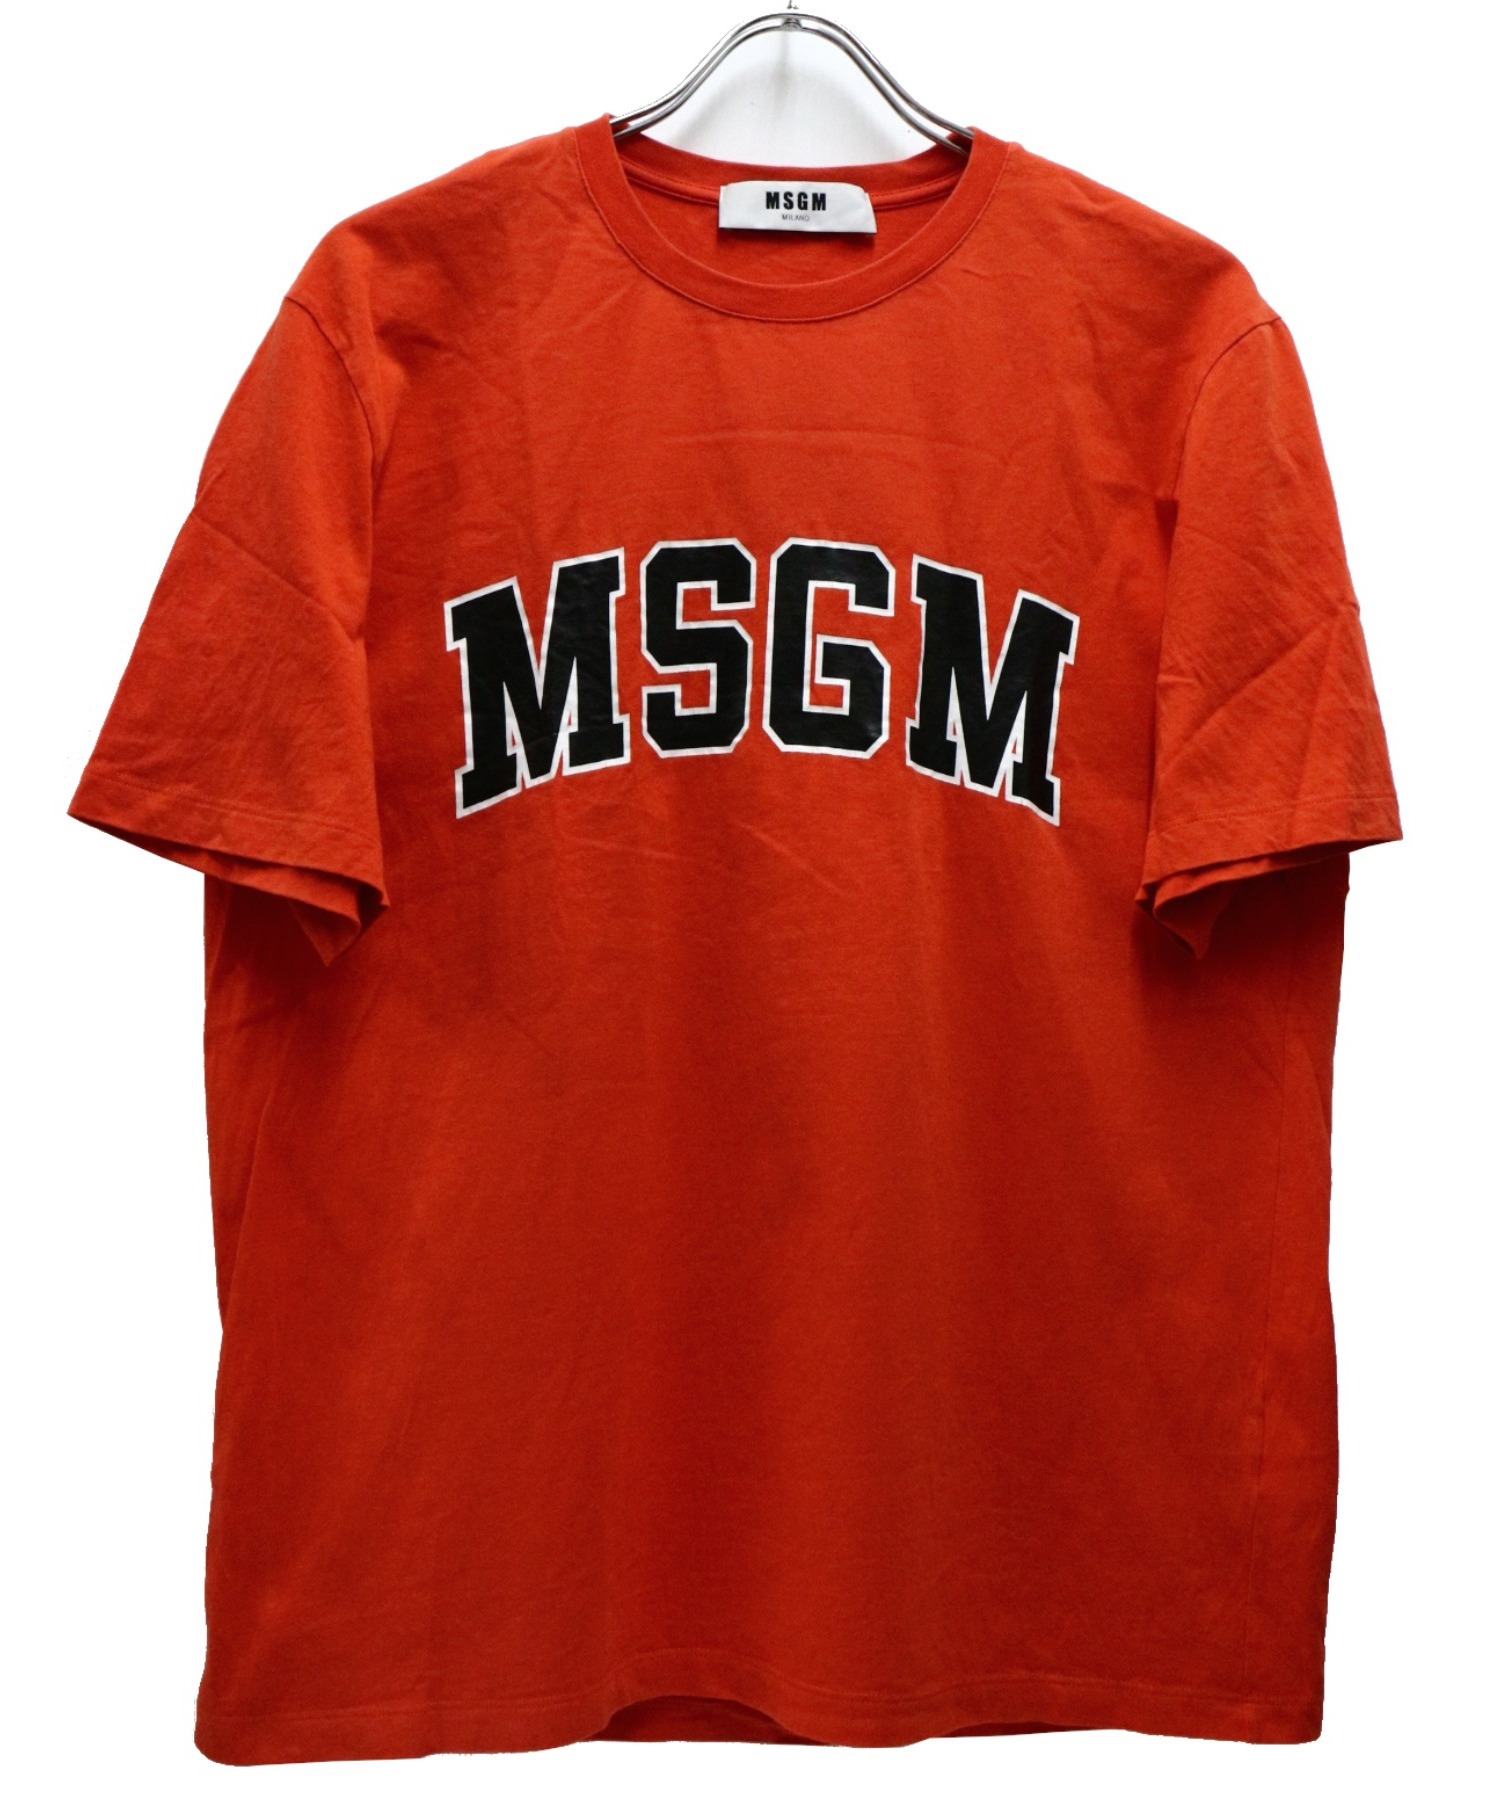 MSGM (エムエスジーエム) ロゴプリントTシャツ オレンジ サイズ:S